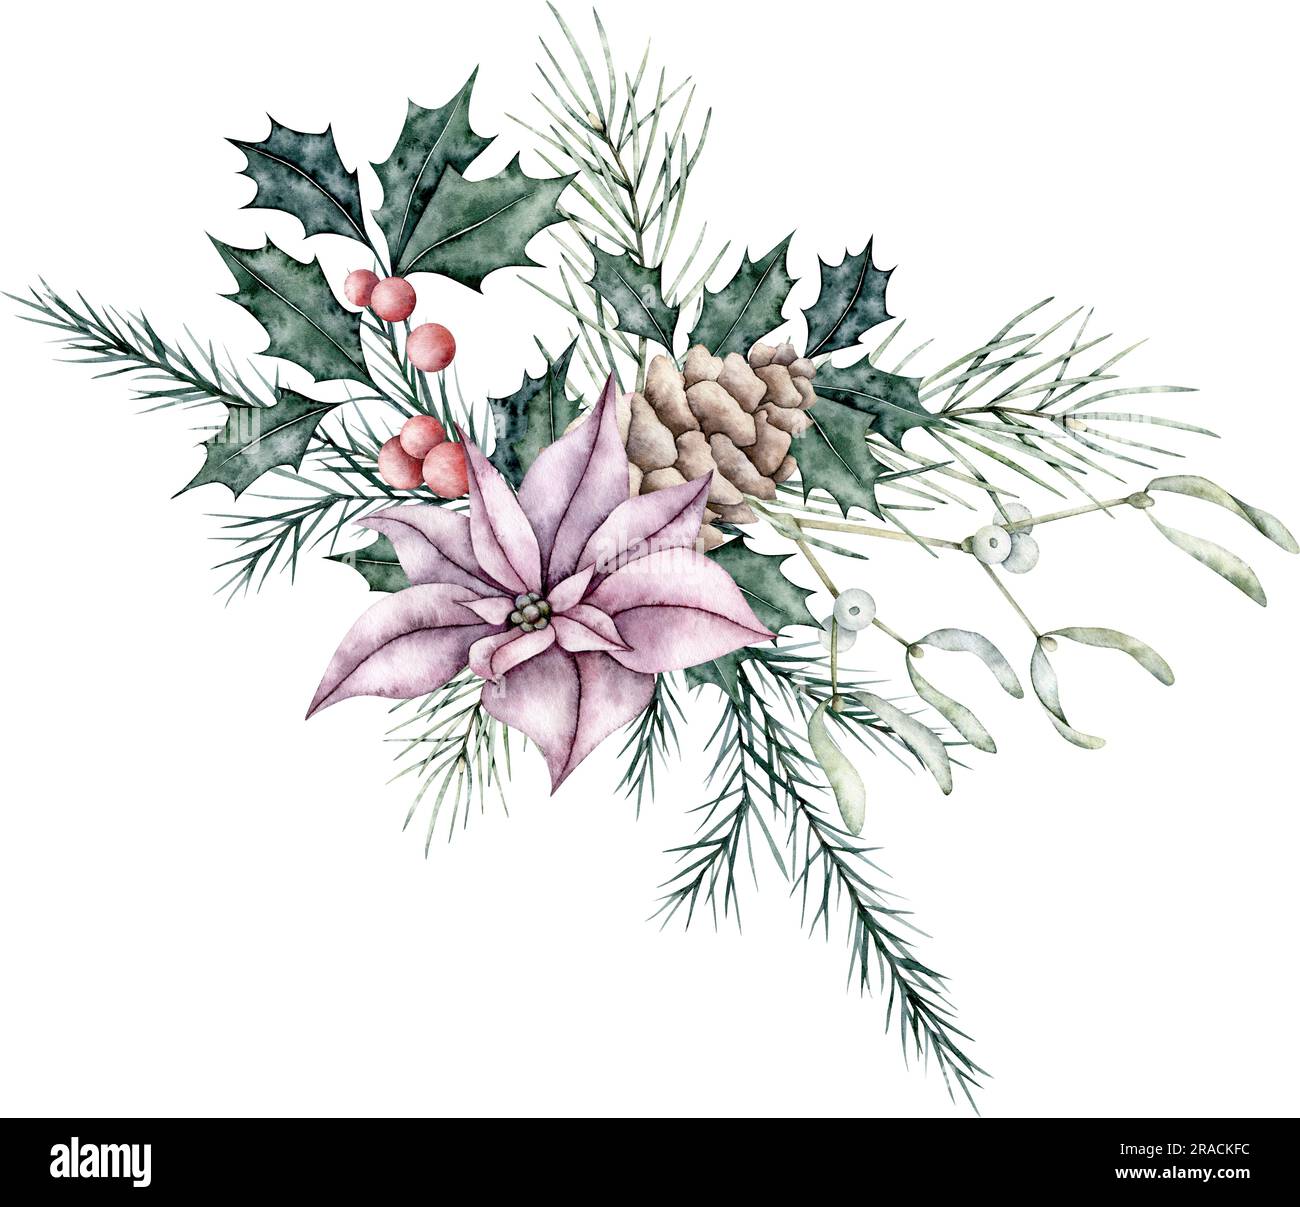 Weihnachtsstrauß aus roter Poinsettia-Blume, Mistelzweig oder Viscum, Kiefernzapfen, Ileex, heiliger Zweig mit Beeren und smaragdgrünen Fichtenzweig, immergrüner Baum Stockfoto